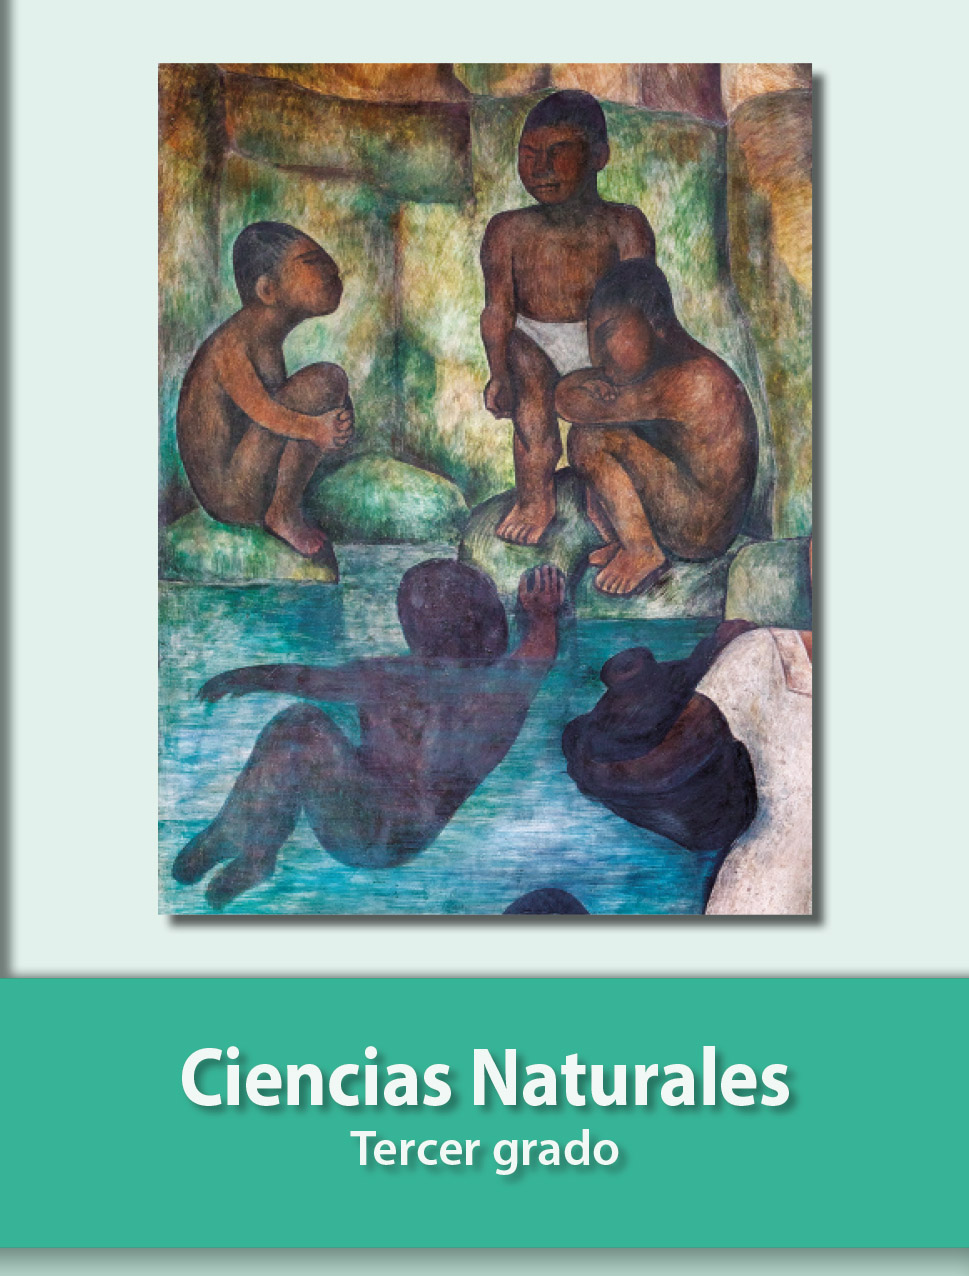 Ciencias Naturales Tercer grado 2020-2021 - Libros de Texto Online